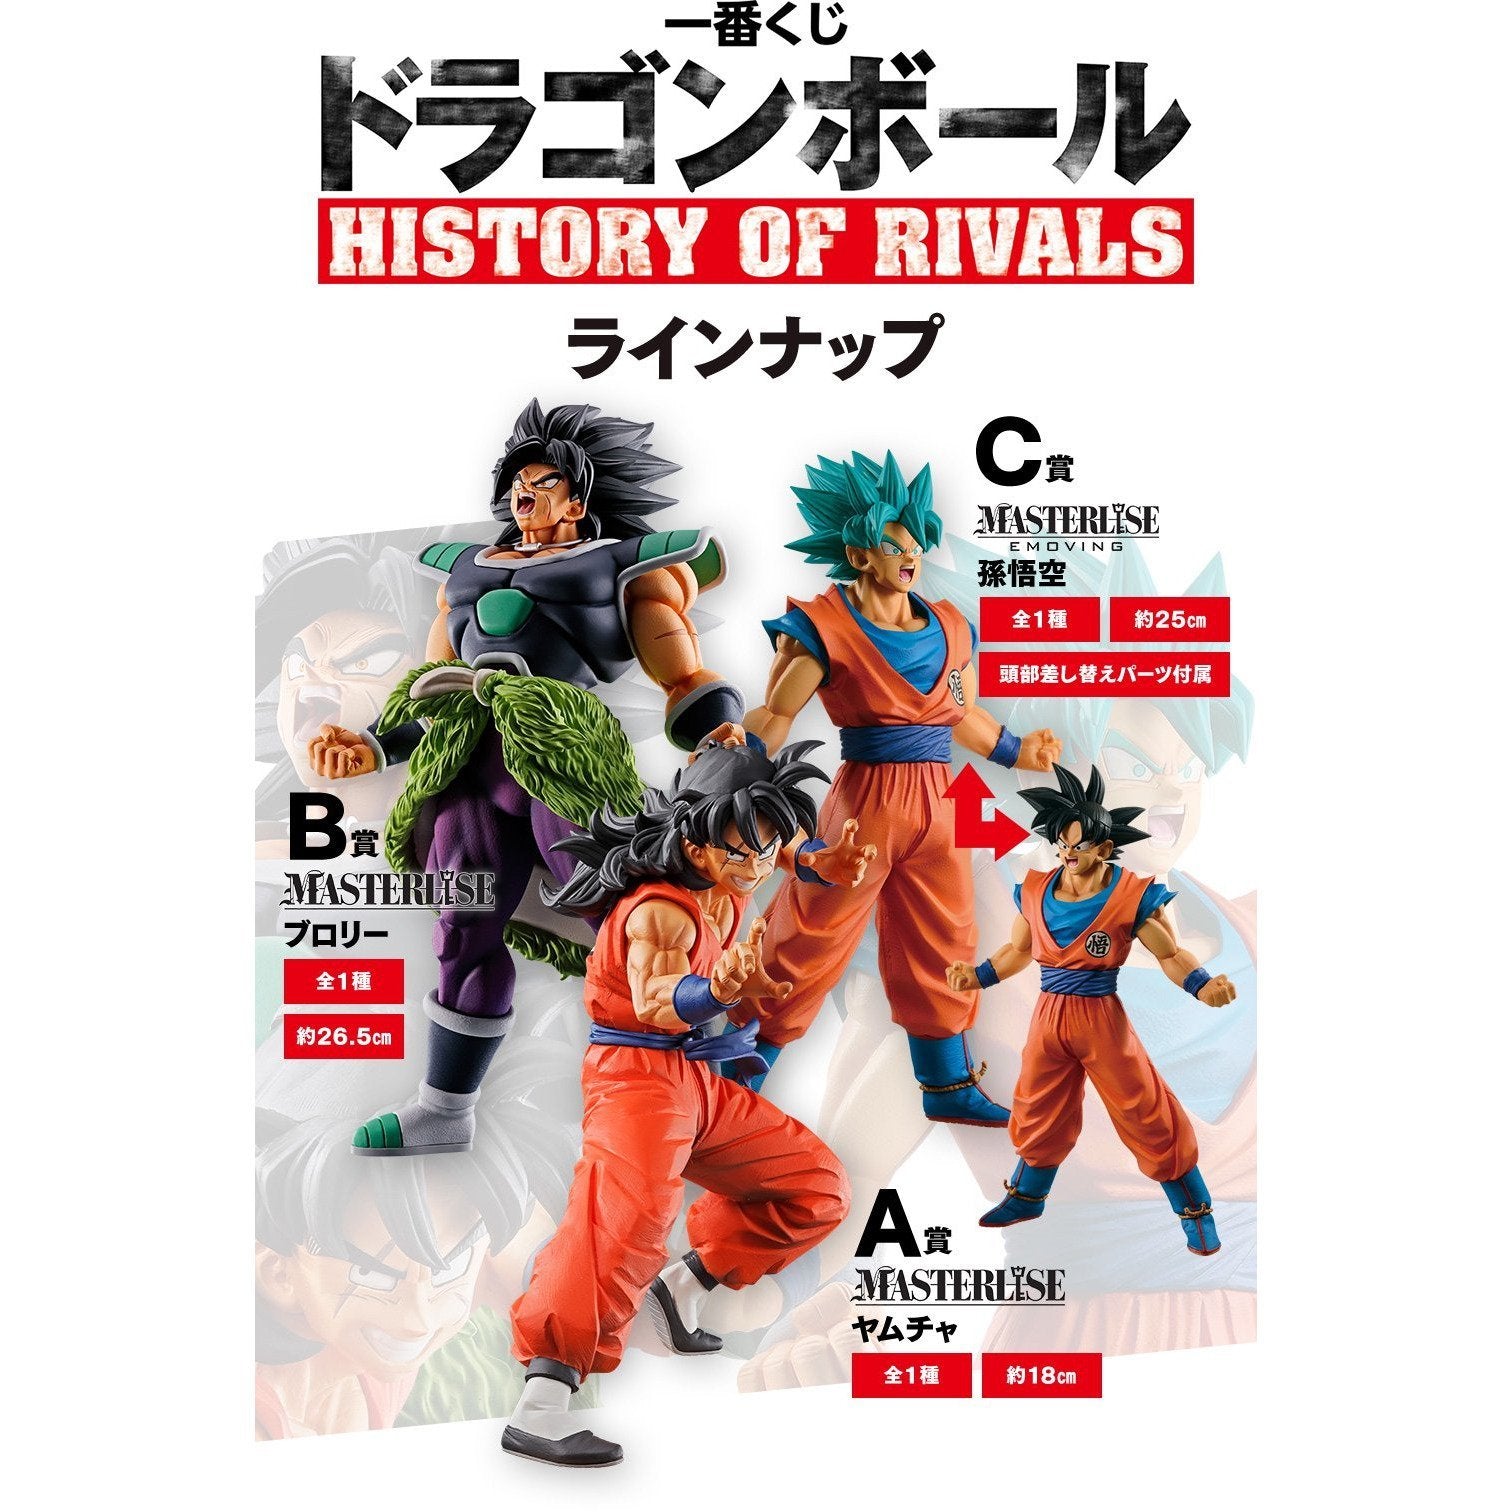 Ichiban Kuji Dragon Ball "History of Rivals"-Bandai-Ace Cards & Collectibles